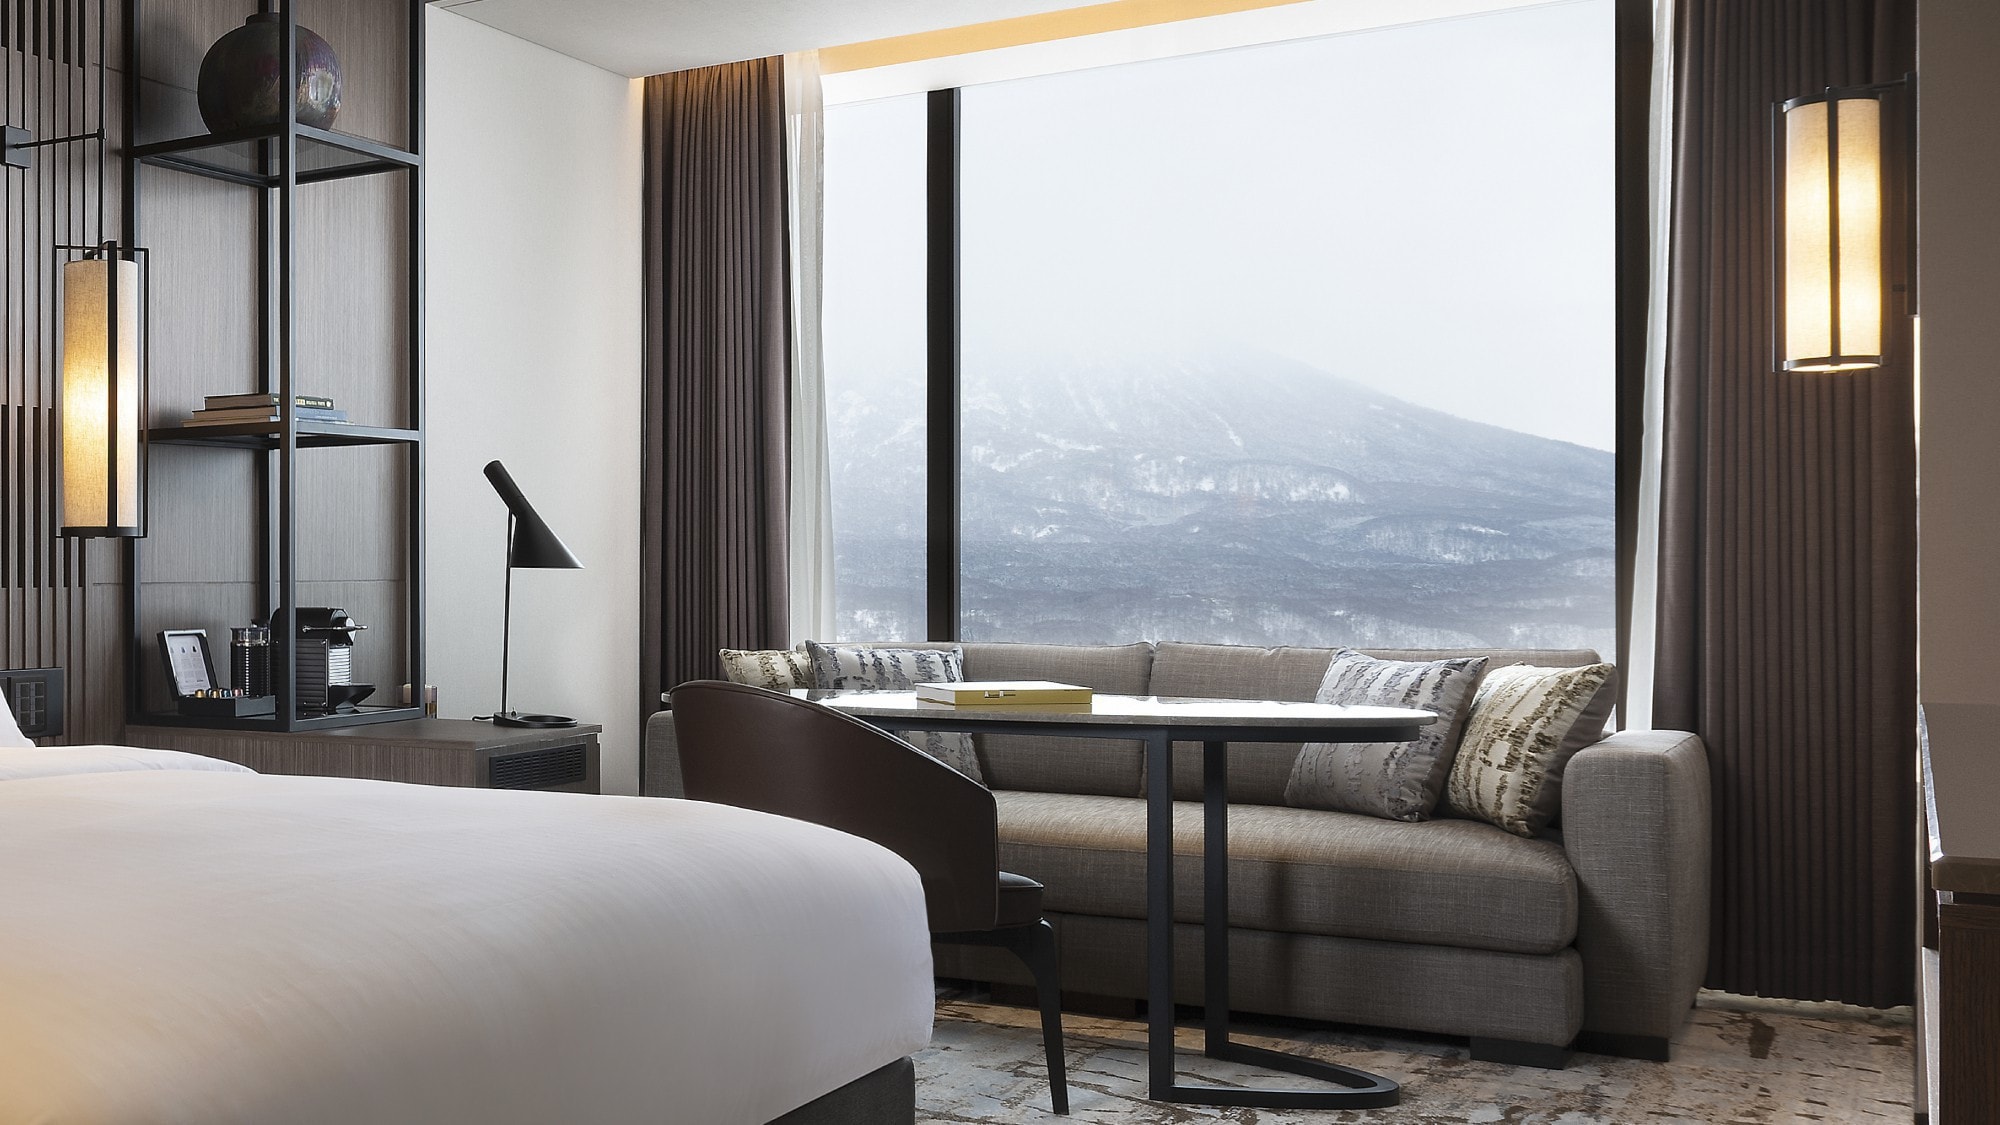 ◆ เชื่อมต่อโดยตรงกับ Niseko Village Ski Resort โรงแรมรีสอร์ทที่ล้อมรอบด้วยธรรมชาติอันงดงามของภูเขา Yotei และ Niseko Annupuri